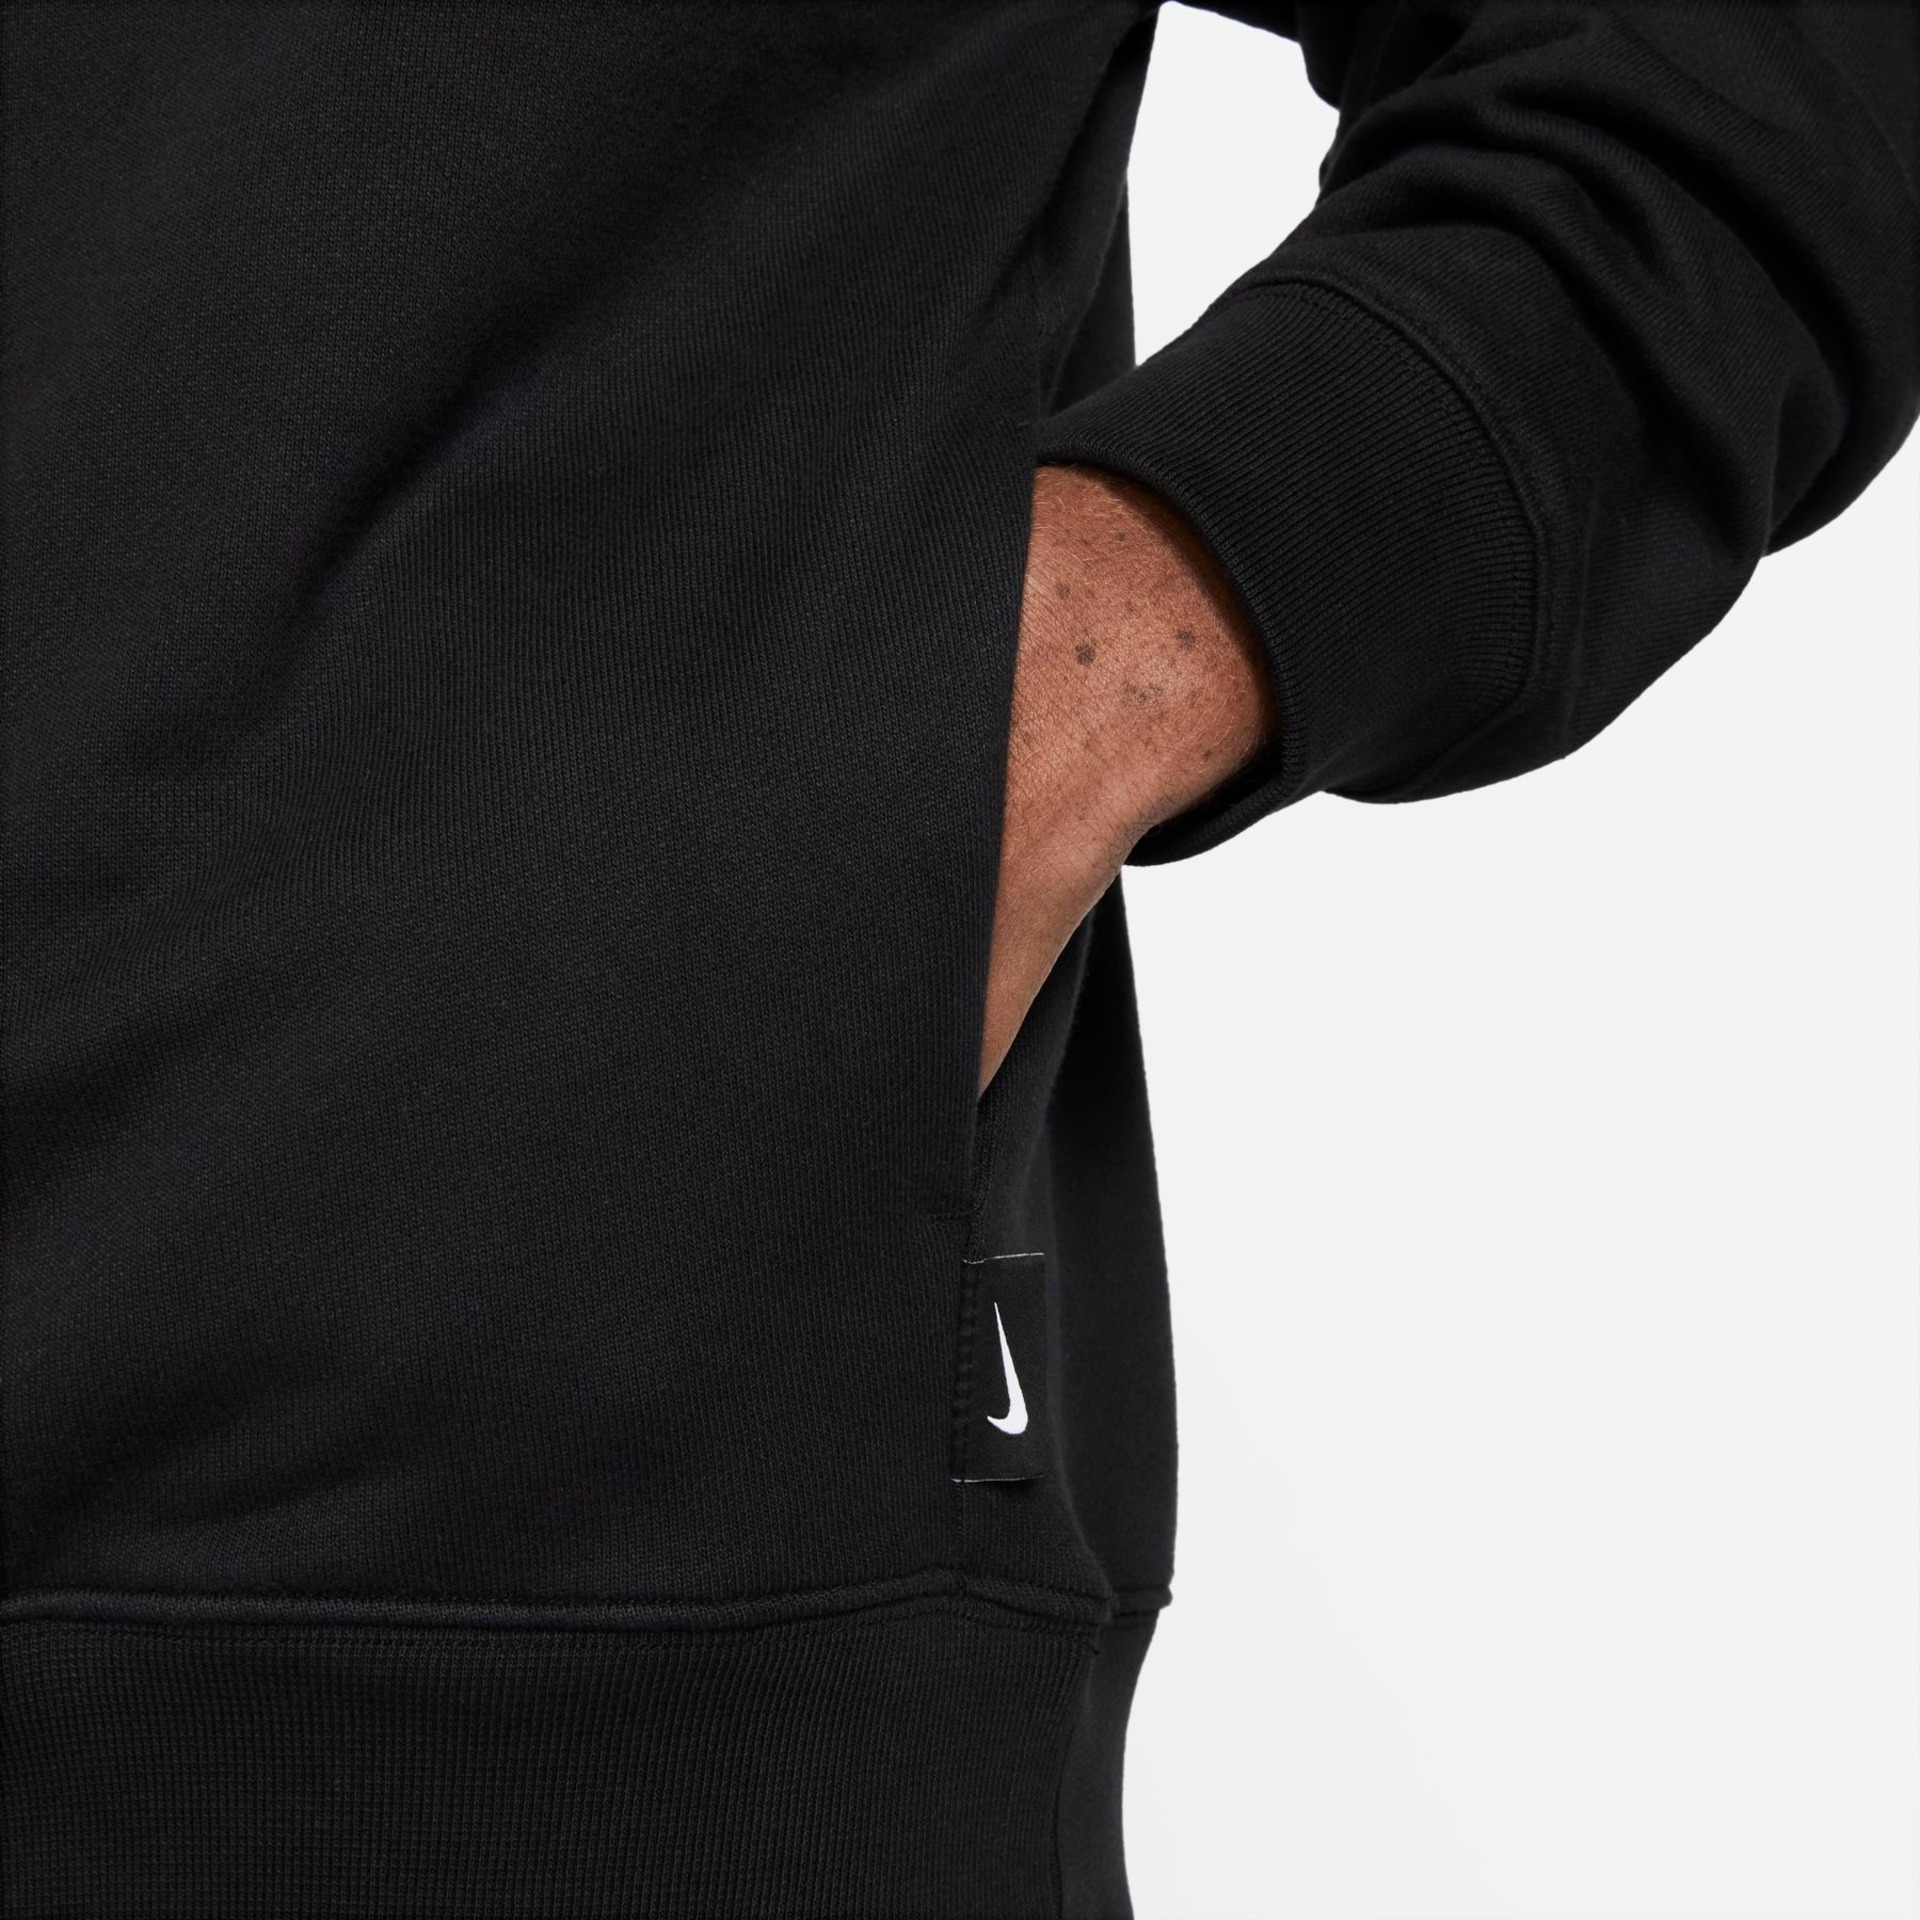 Blusão Nike Swoosh Masculino - Foto 6